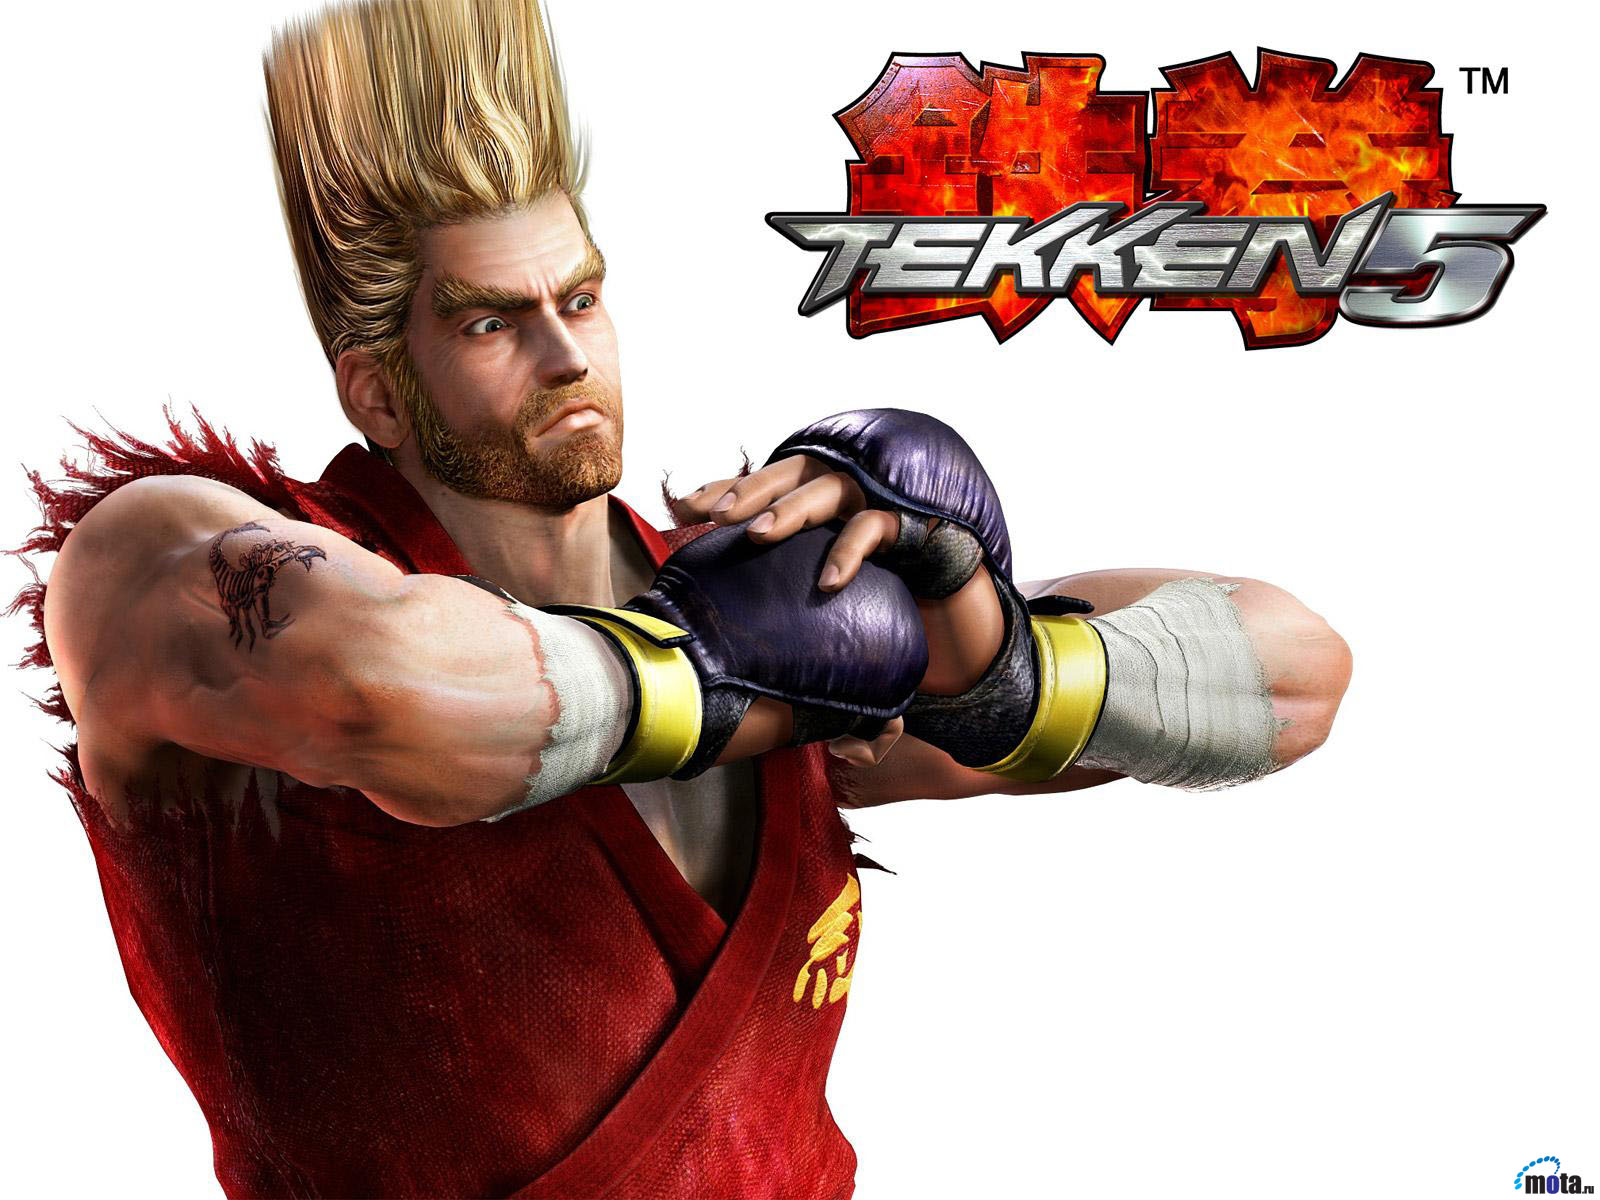 Tekken 5 wallpapers, Video Game, HQ Tekken 5 pictures 4K